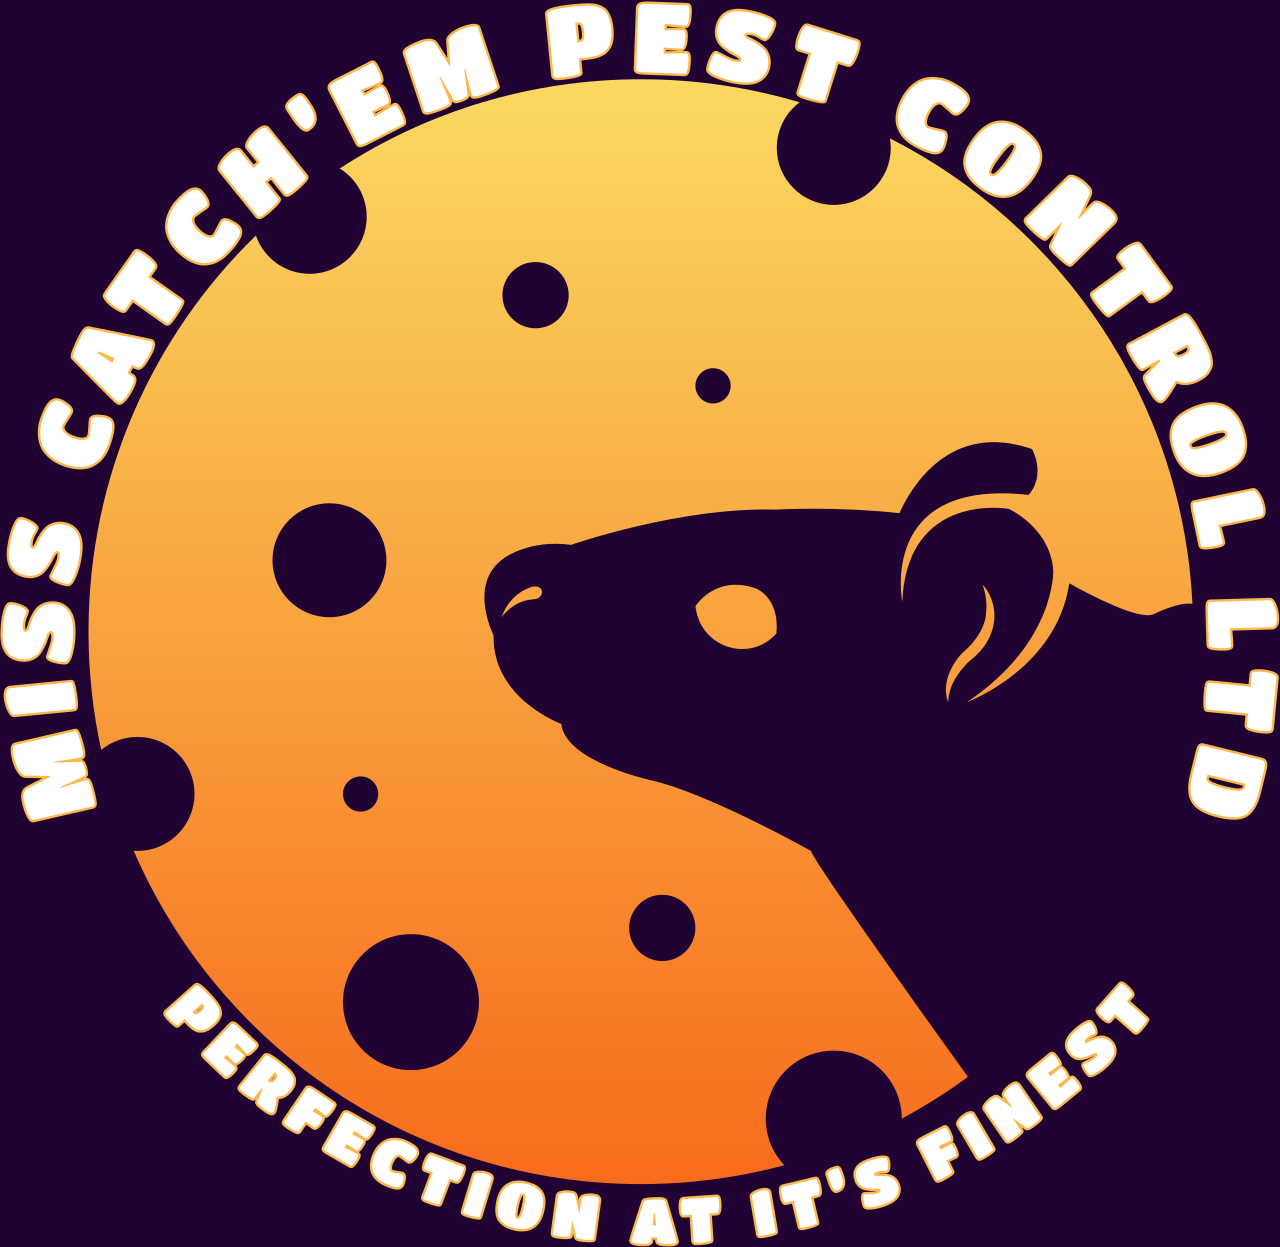 MISS CATCH’EM PEST CONTROL LTD's web page